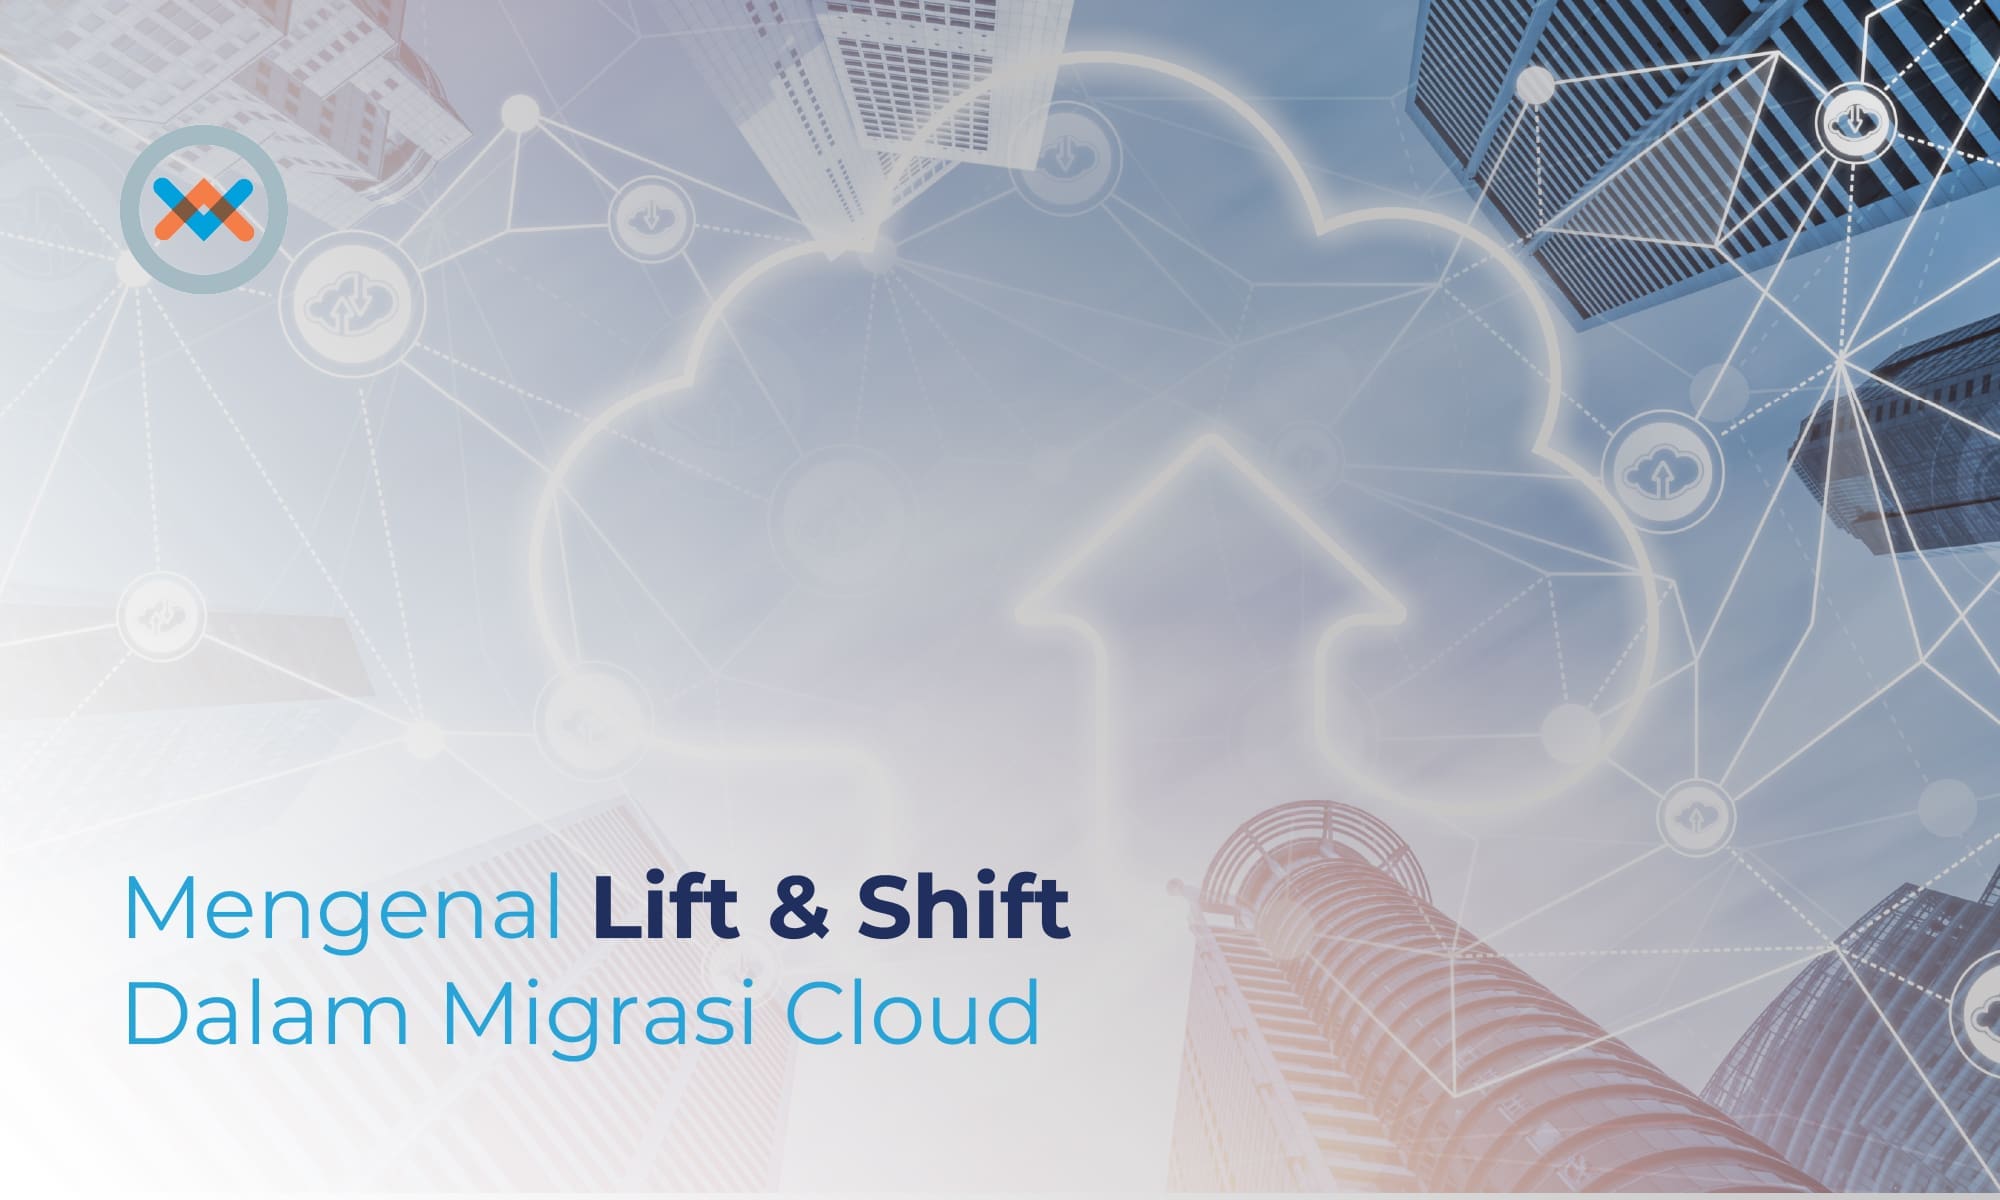 Mengenal Lift & Shift Dalam Migrasi Cloud